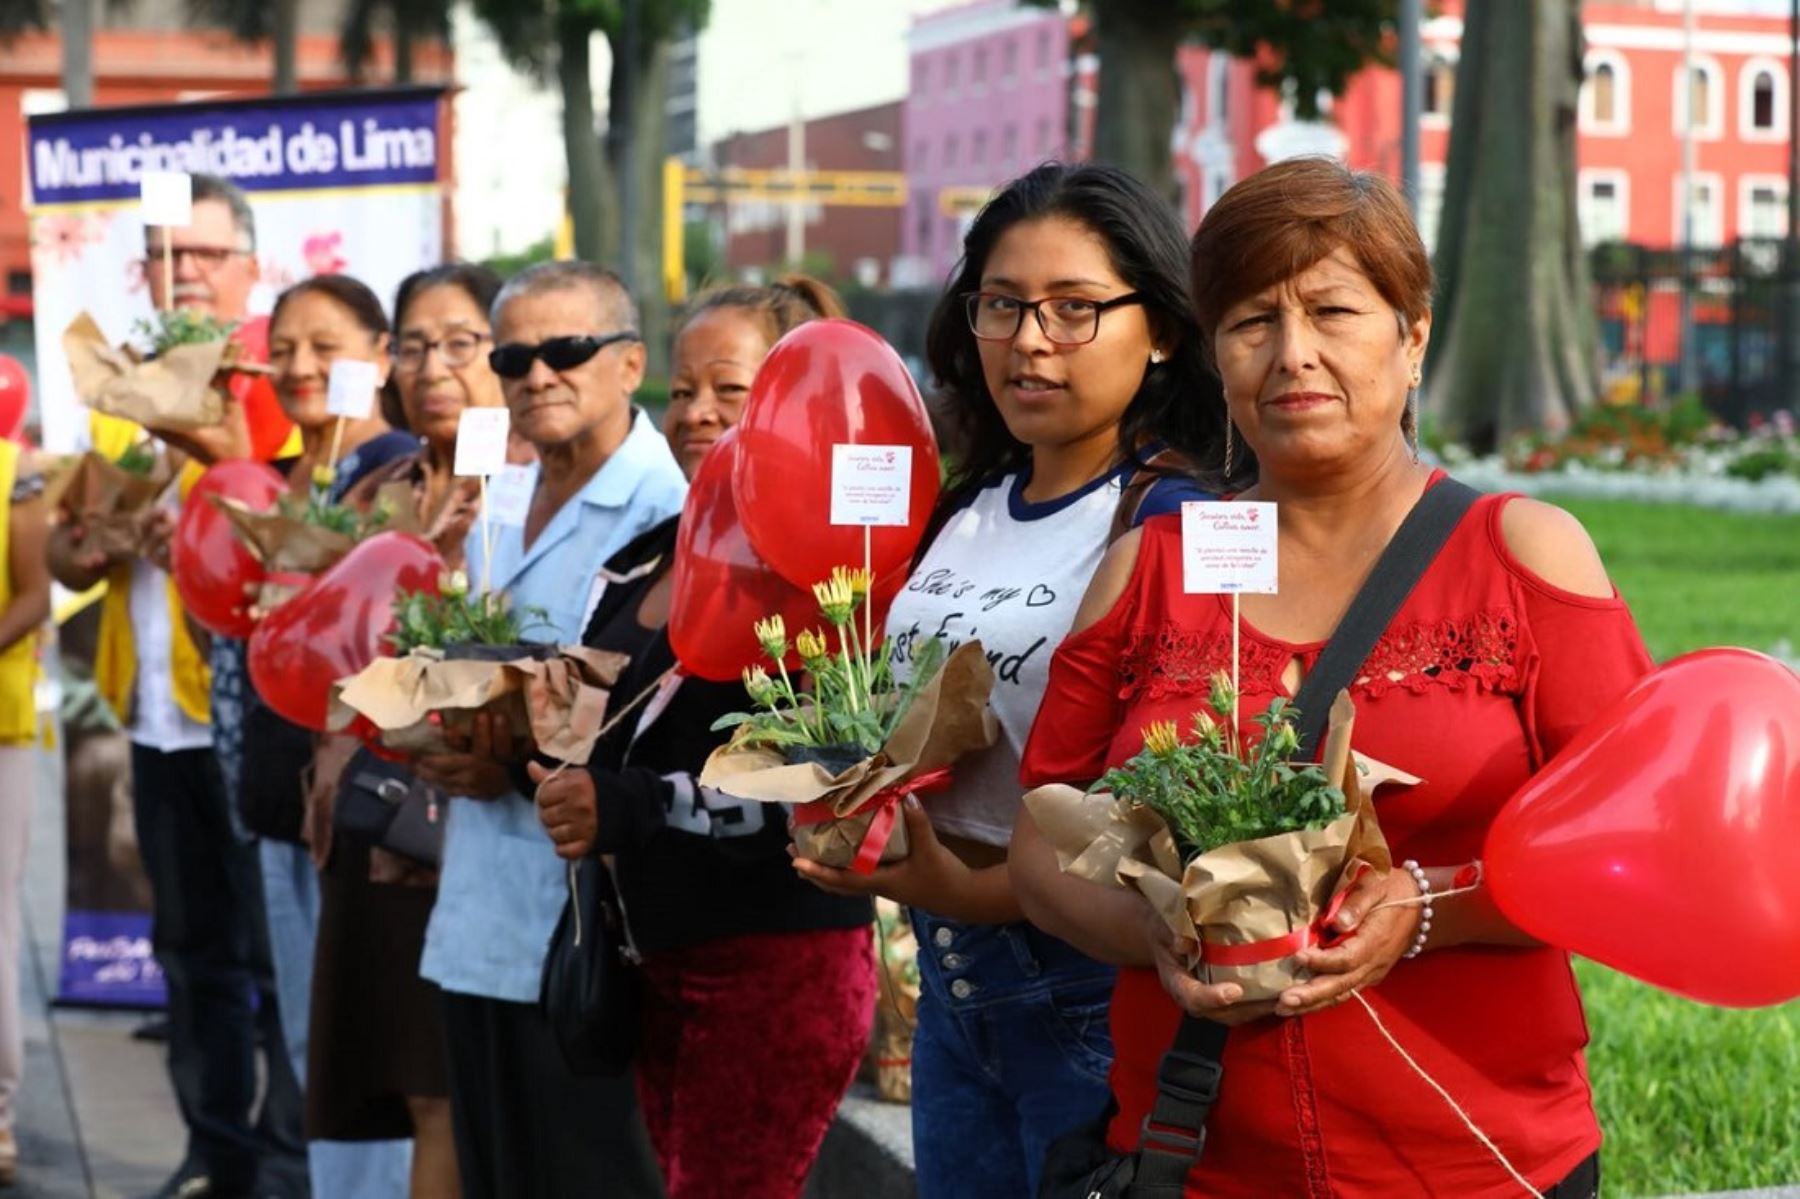 MML regaló más de 500 plantitas como símbolo de unión, dedicación y amor. Foto: Difusión.